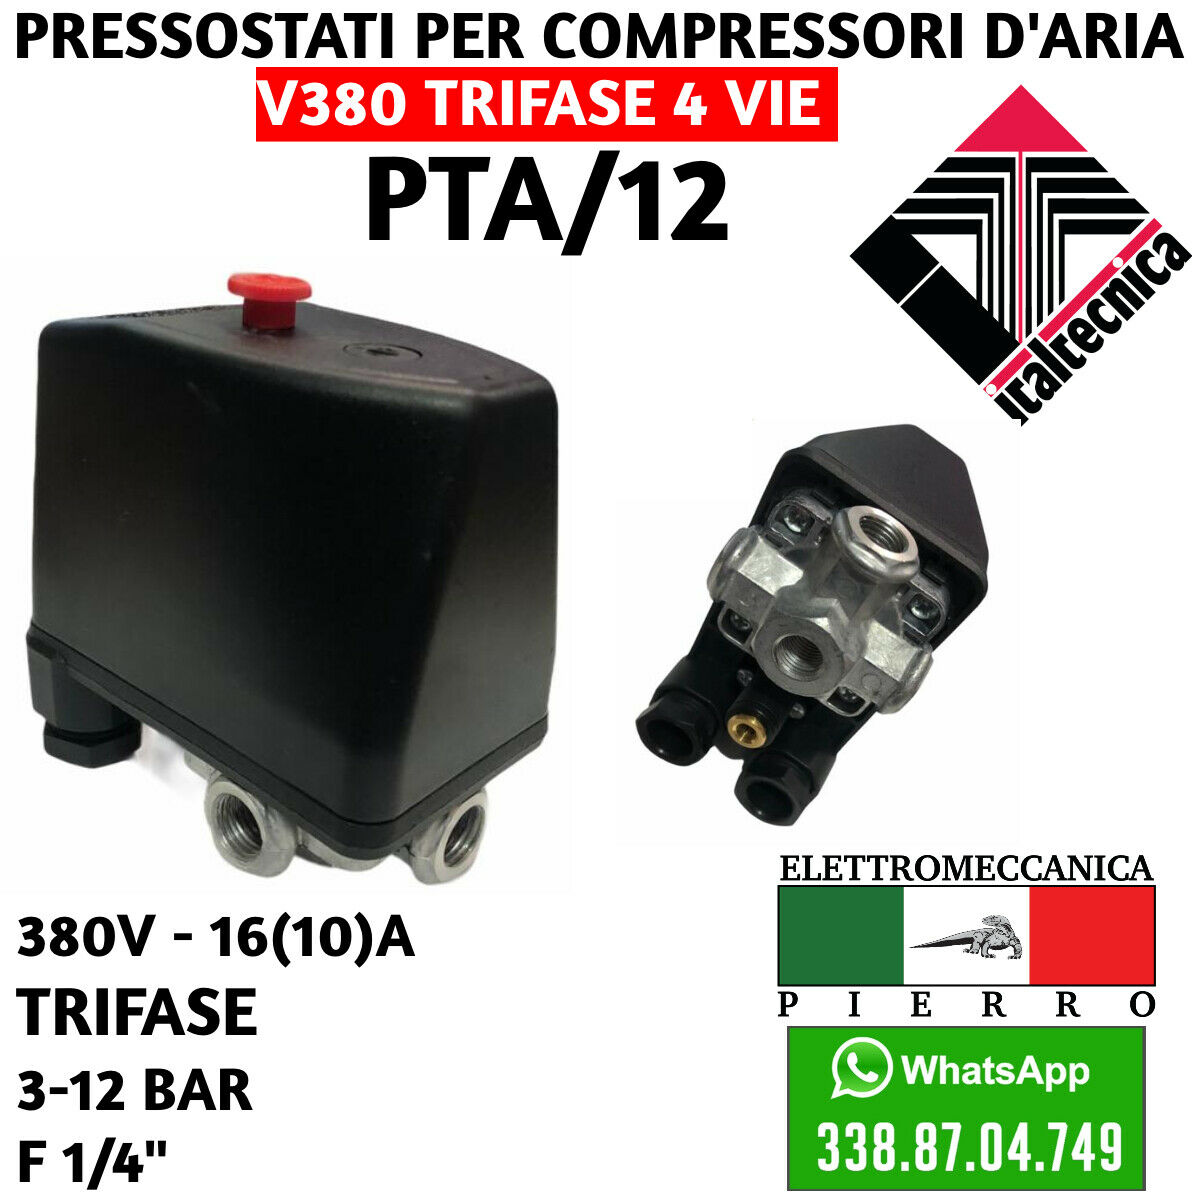 PRESSOSTATO PER COMPRESSORI COMPRESSORE 1 VIA 4 VIA AD ARIA V400 V230 –  Elettromeccanica Pierro Shop